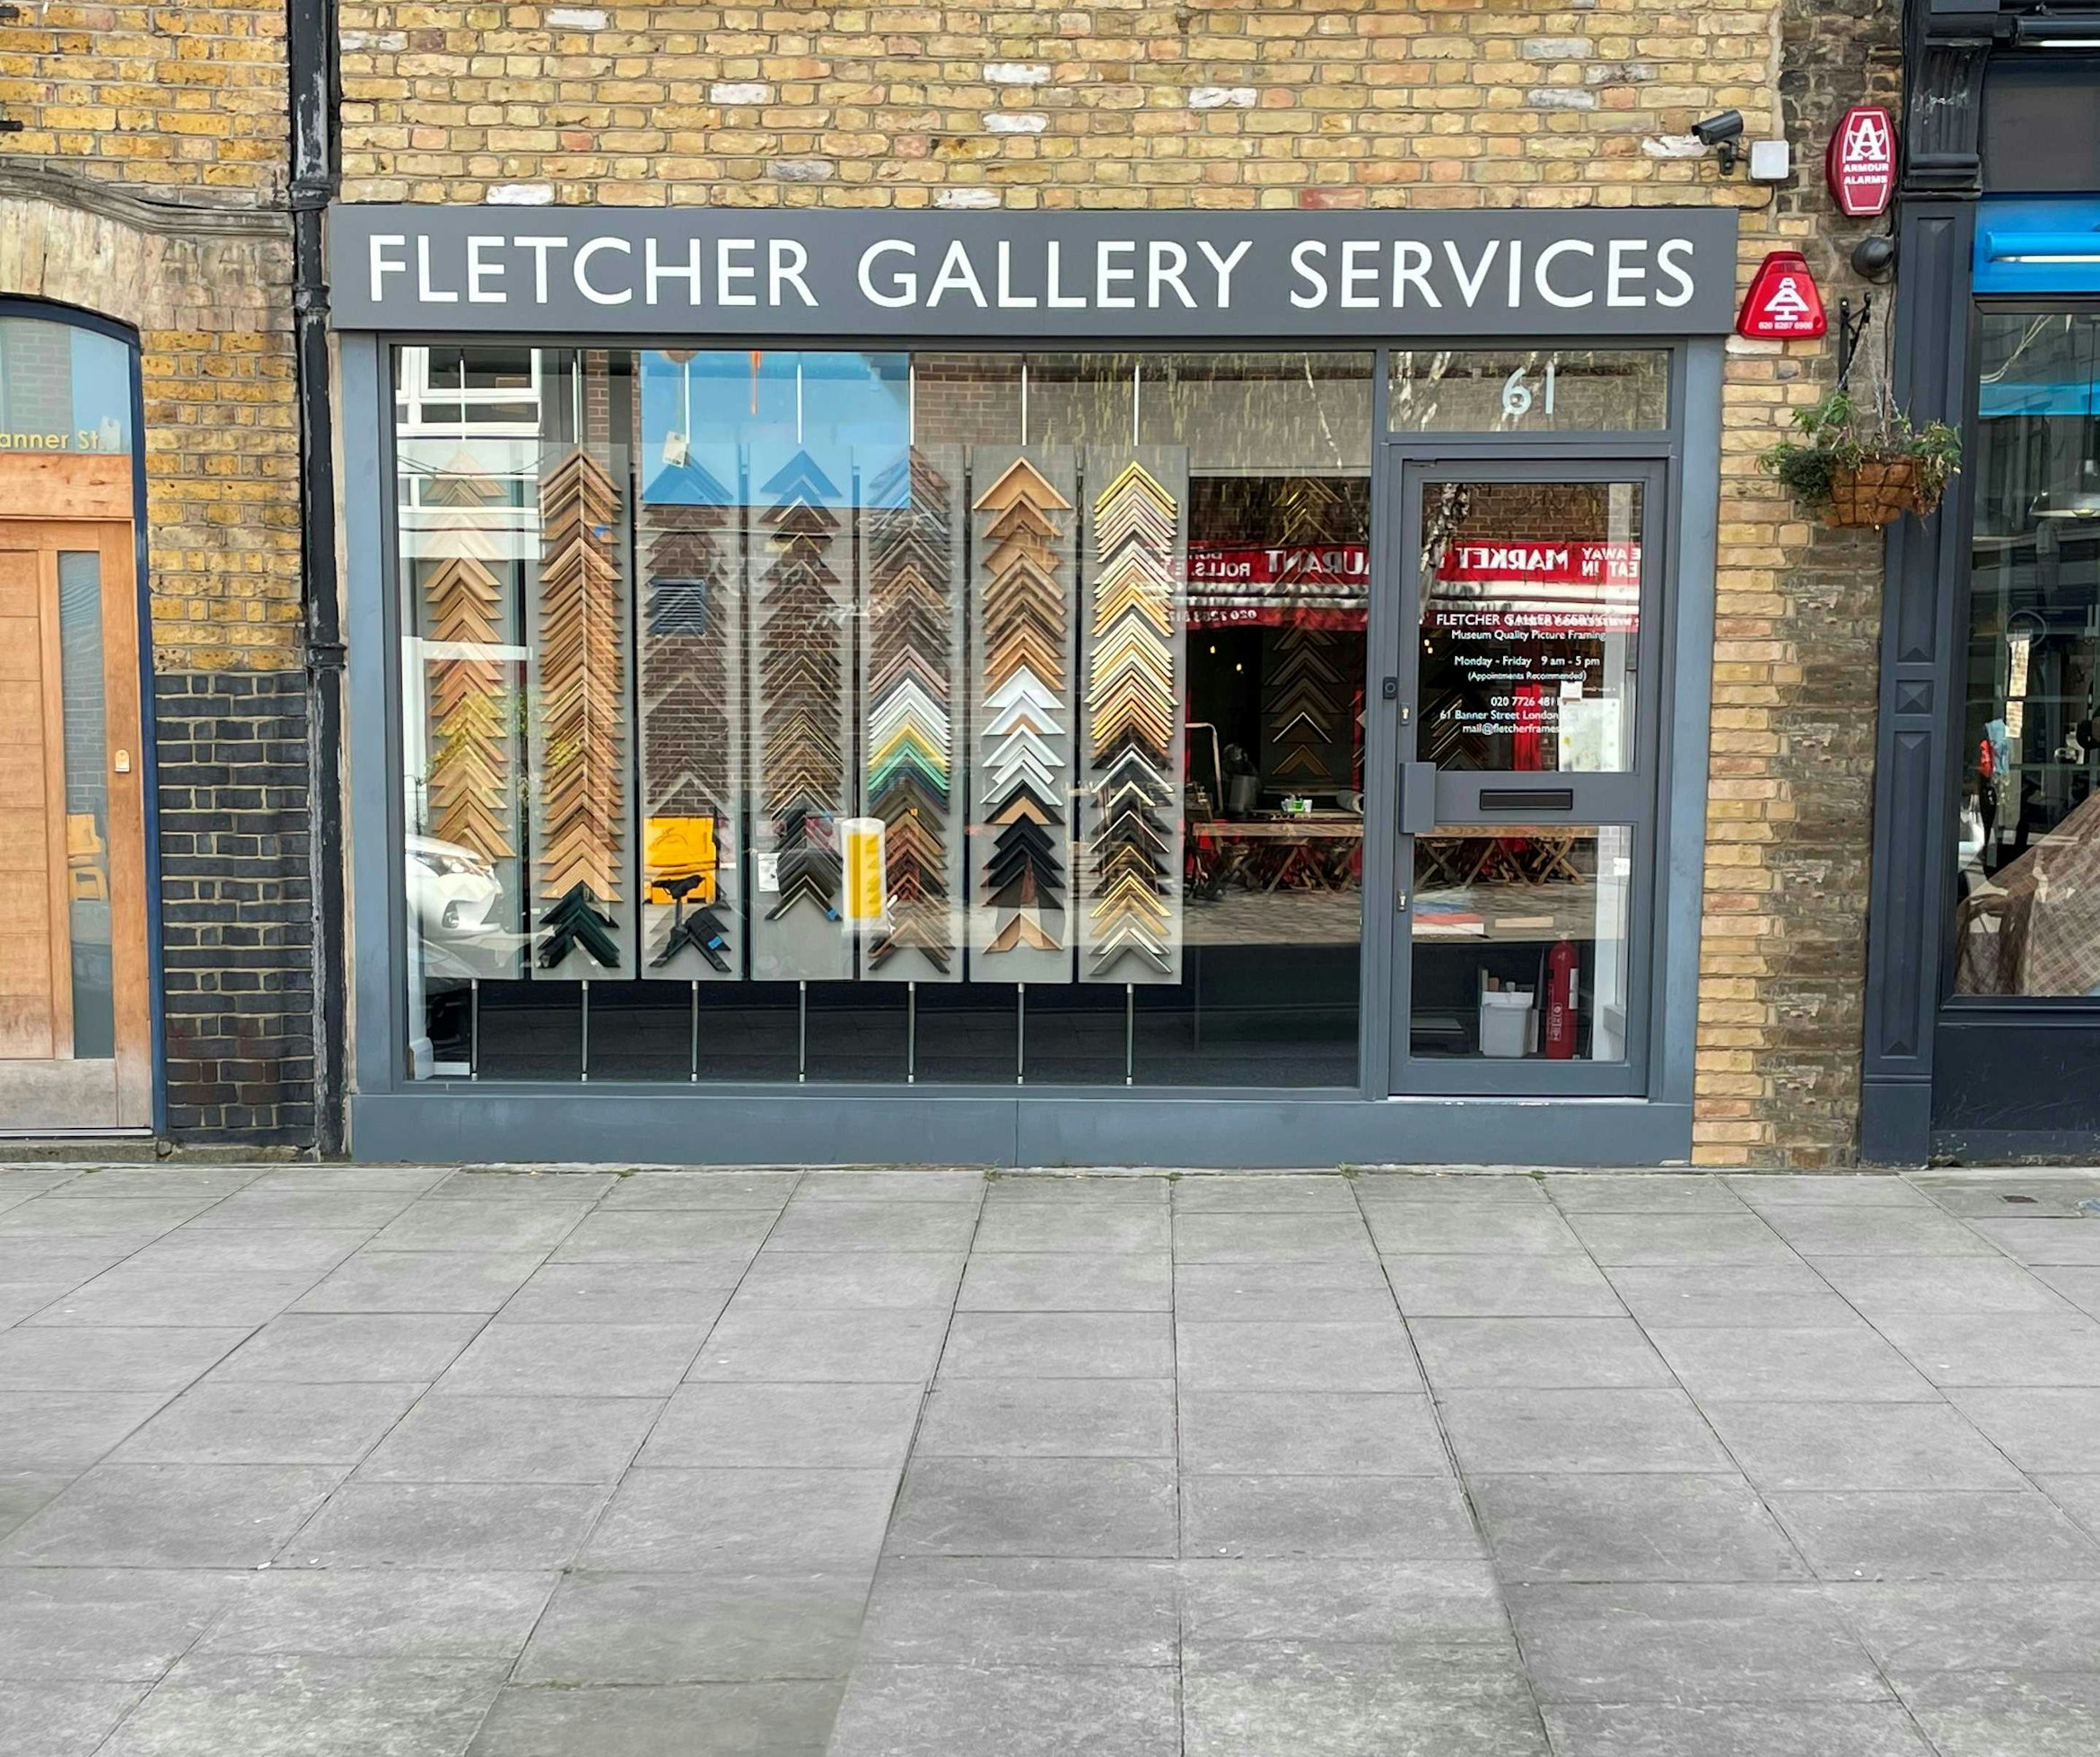 Fletcher Gallery Services